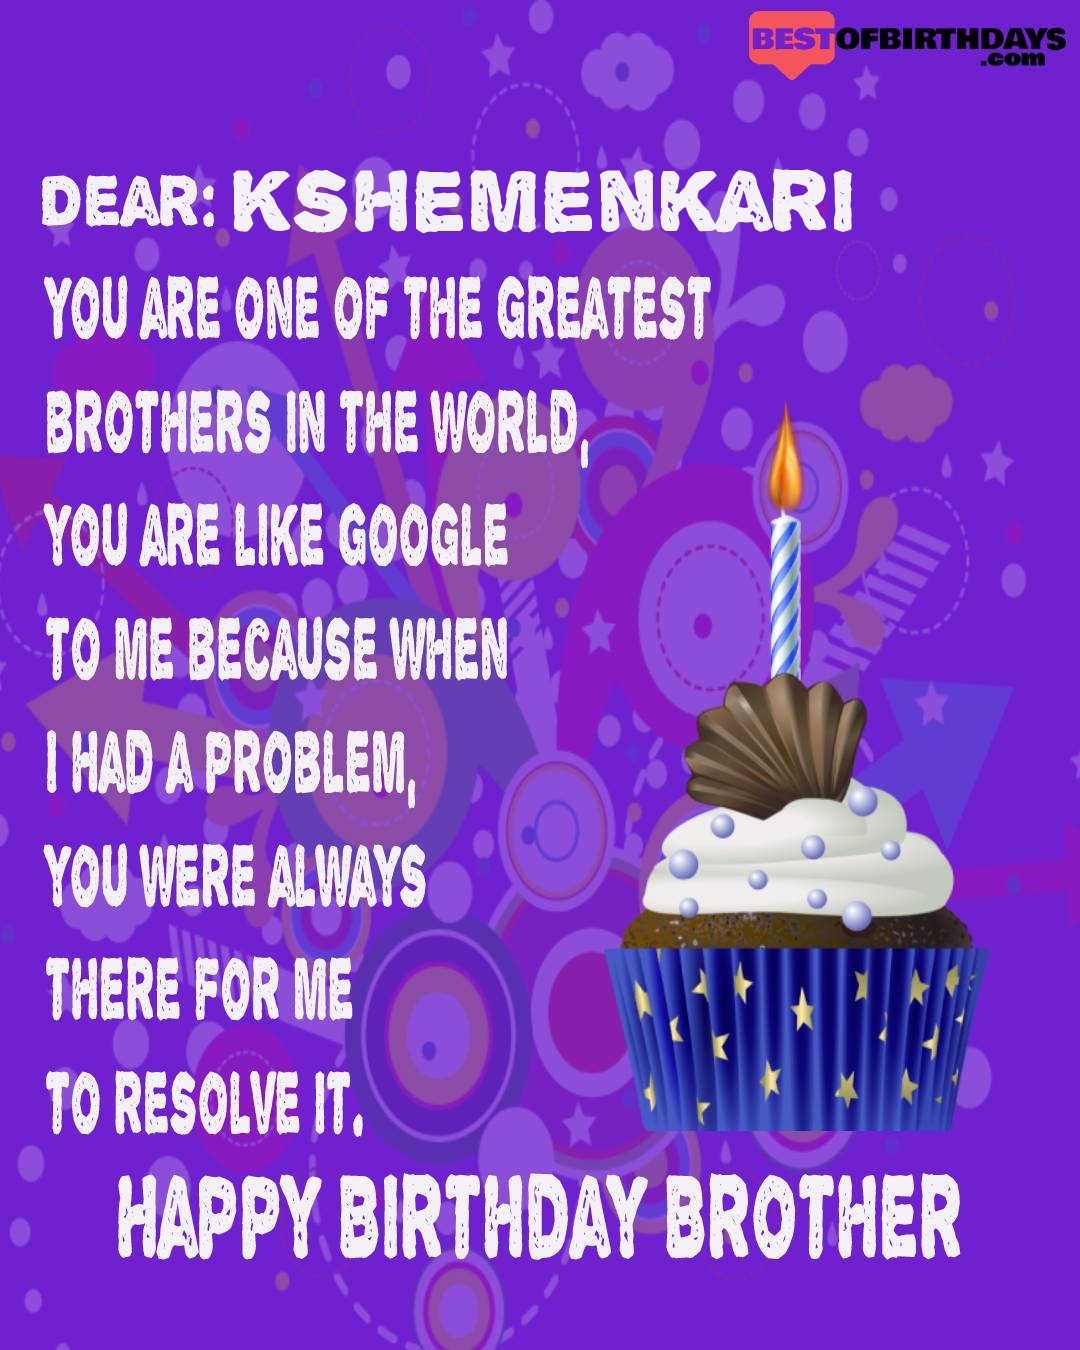 Happy birthday kshemenkari bhai brother bro